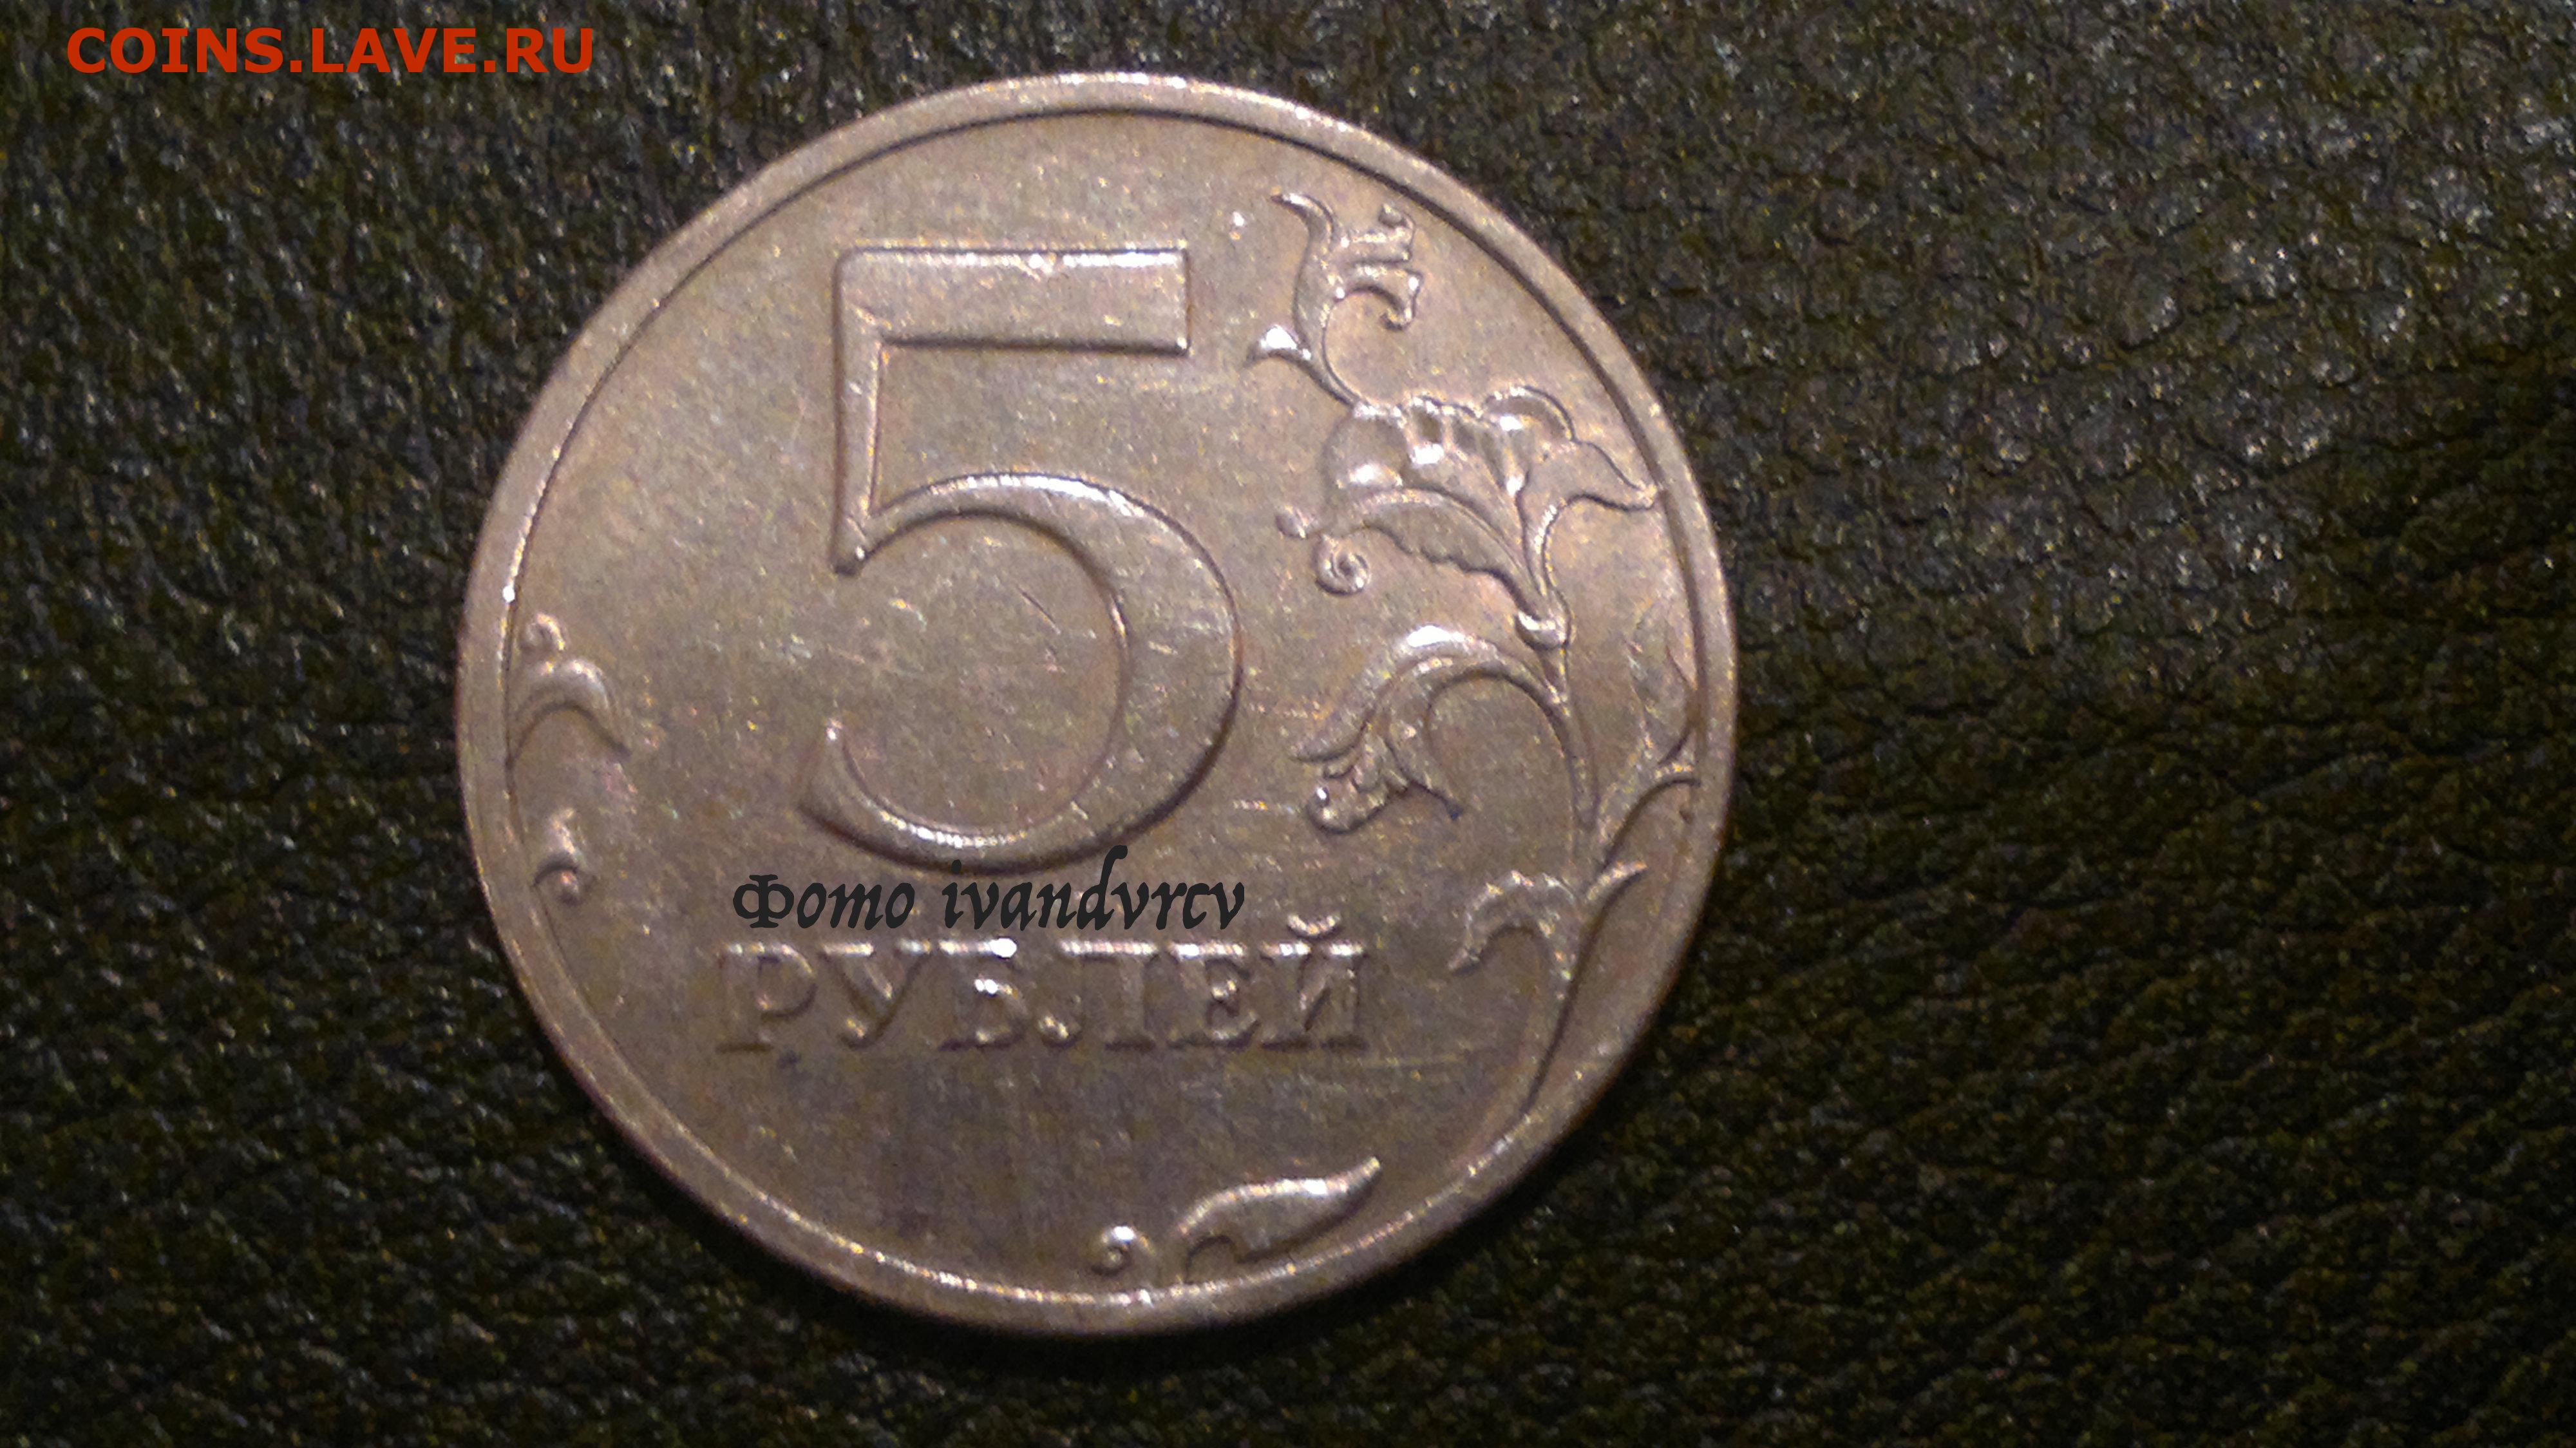 5 рублей новгород. 5 Рублей 1997 СПМД. 5 Рублей 1997 СПМД шт 3. 5 Рублей 1997 СПМД штемпель 2.3. 5 Рублей 1997 штемпель 2.3 (с малой точкой).